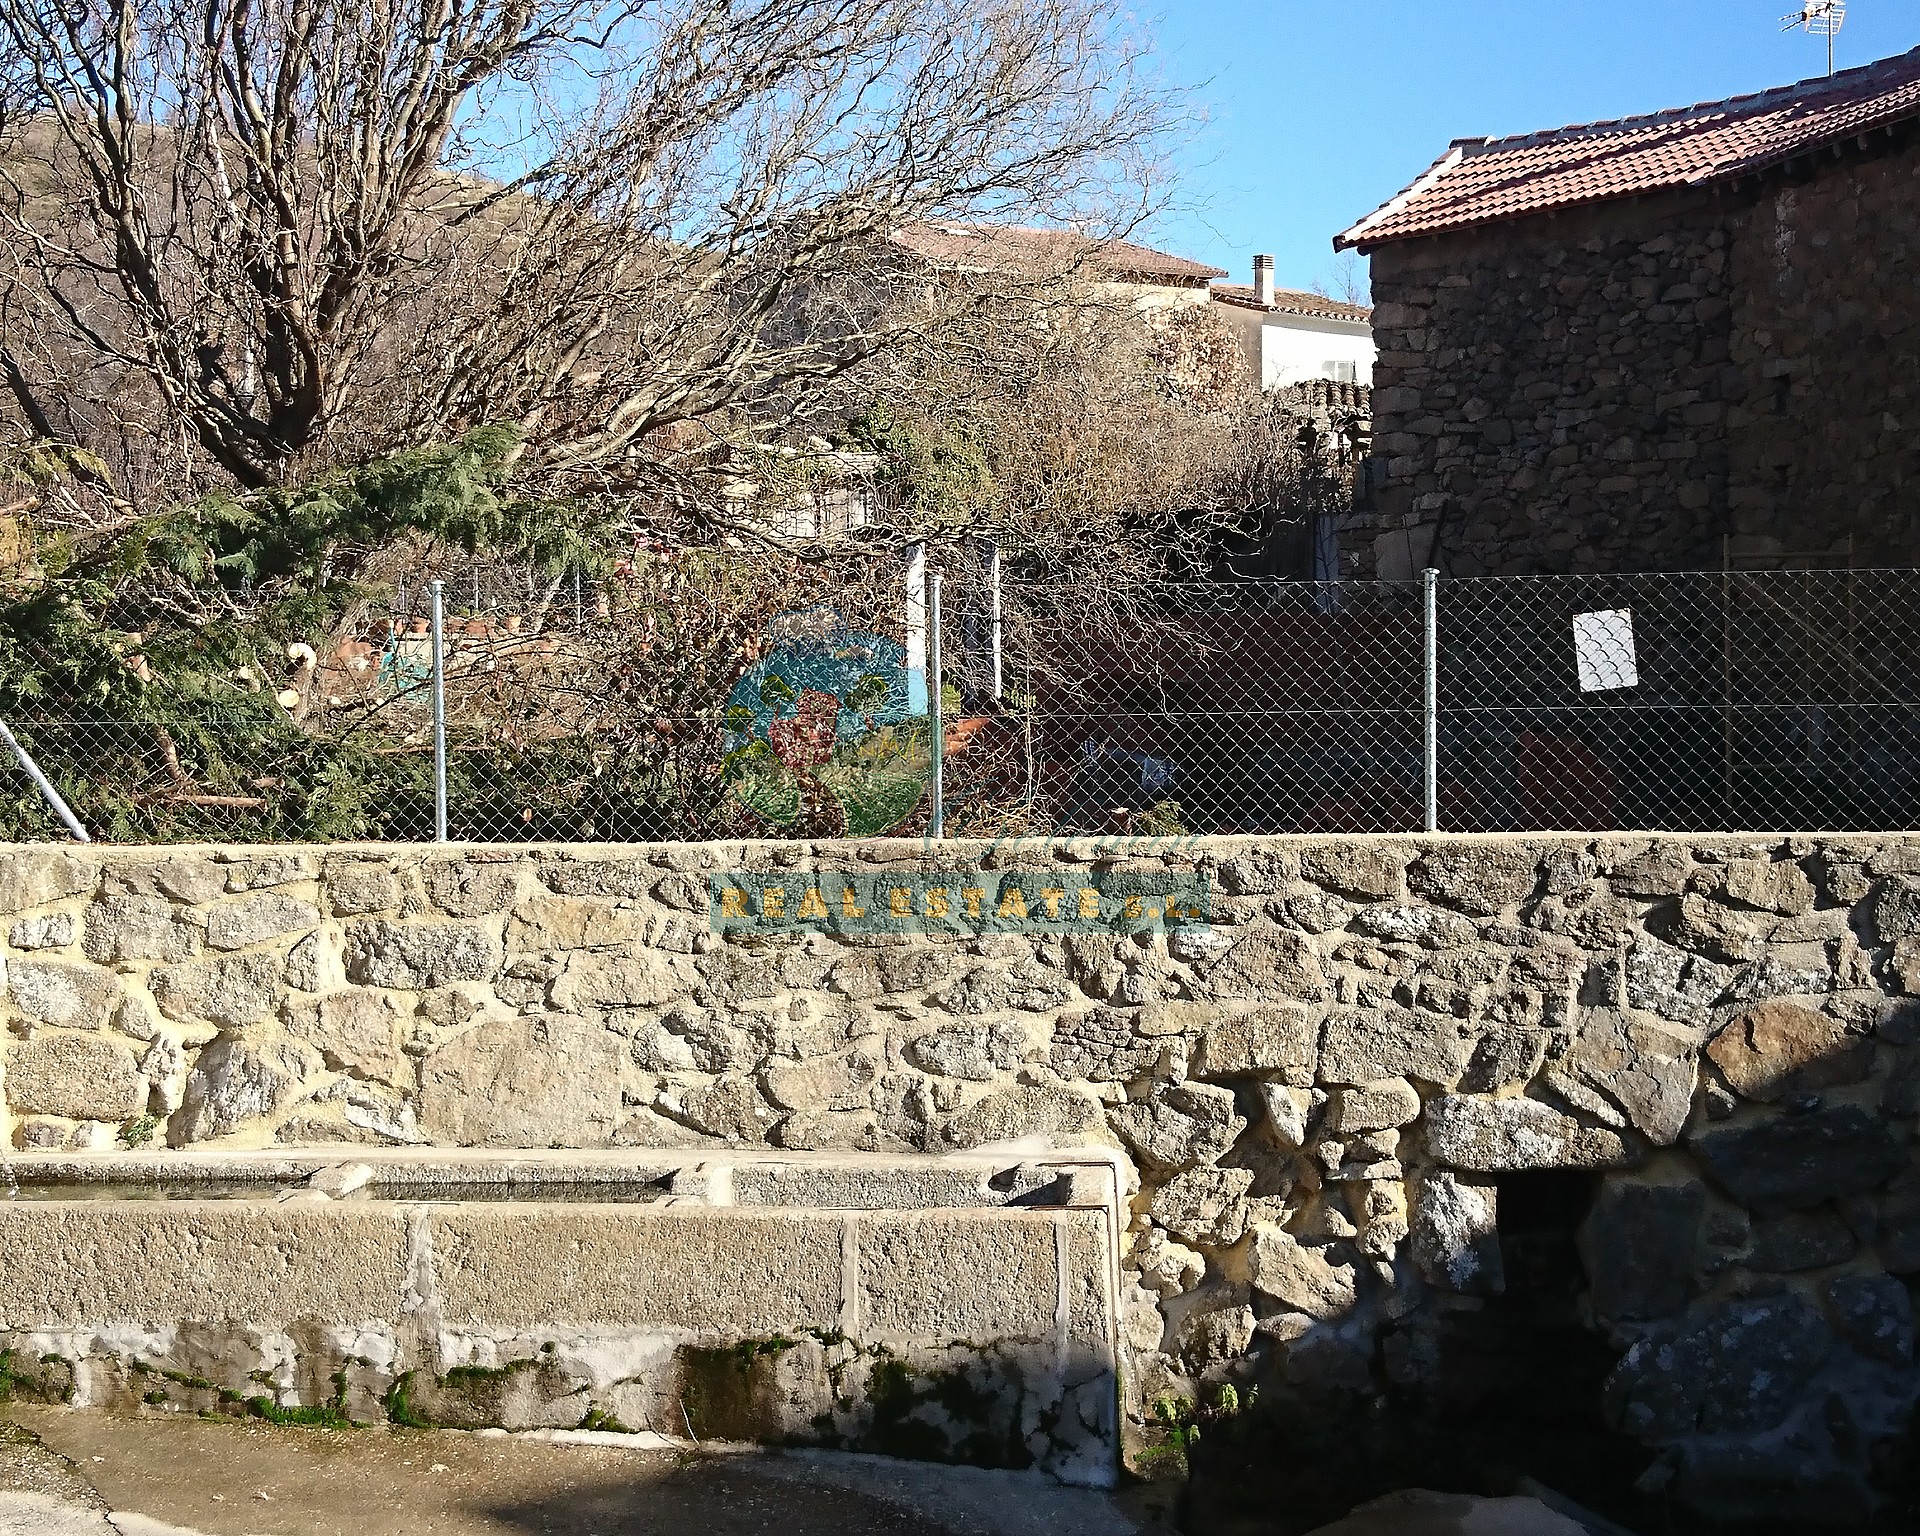 Barn & yard in Sierra de Gredos.